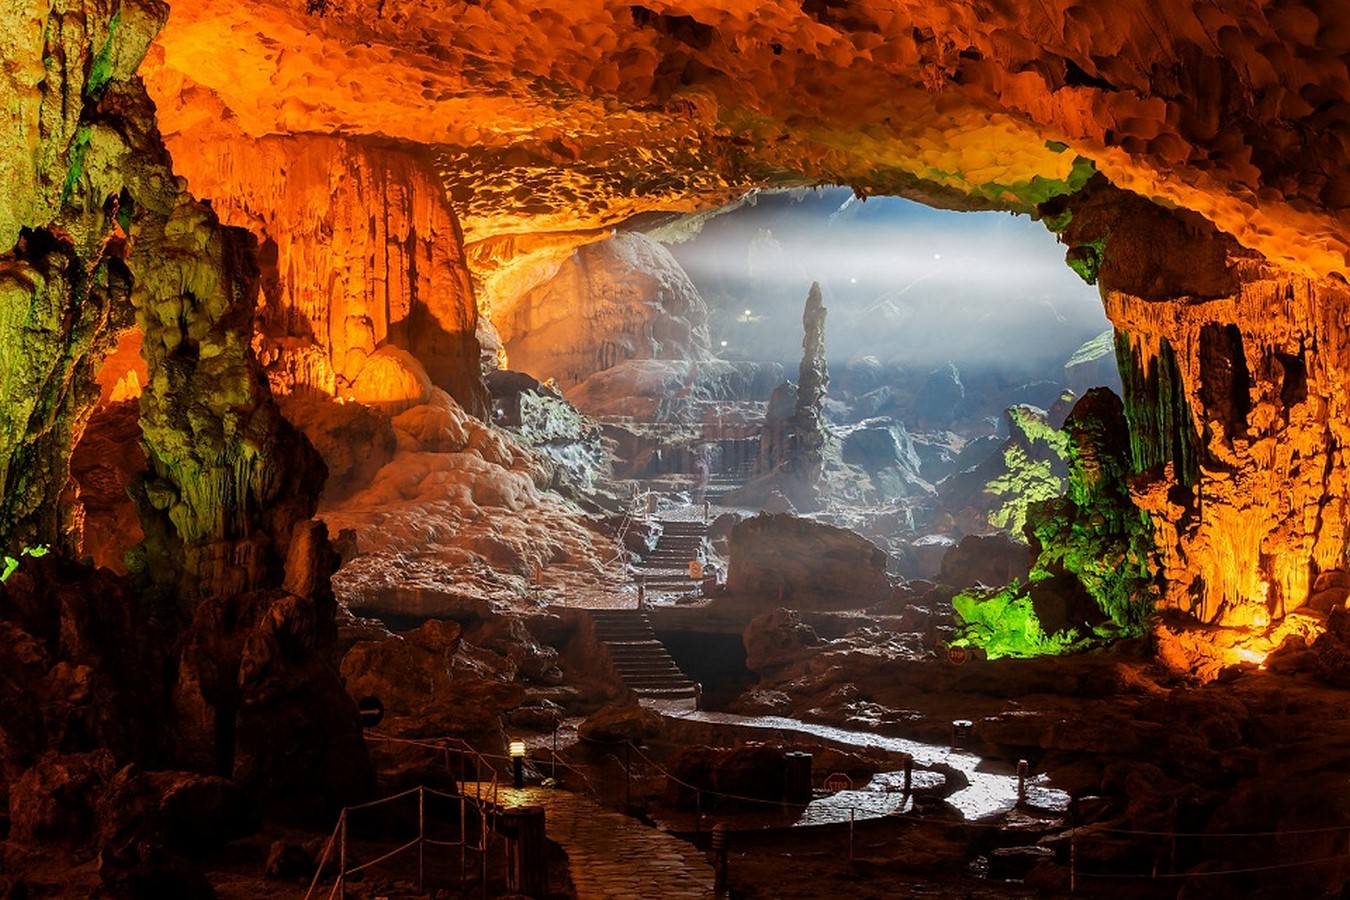 Sung Sot Cave Of Vietnam - Sheet3